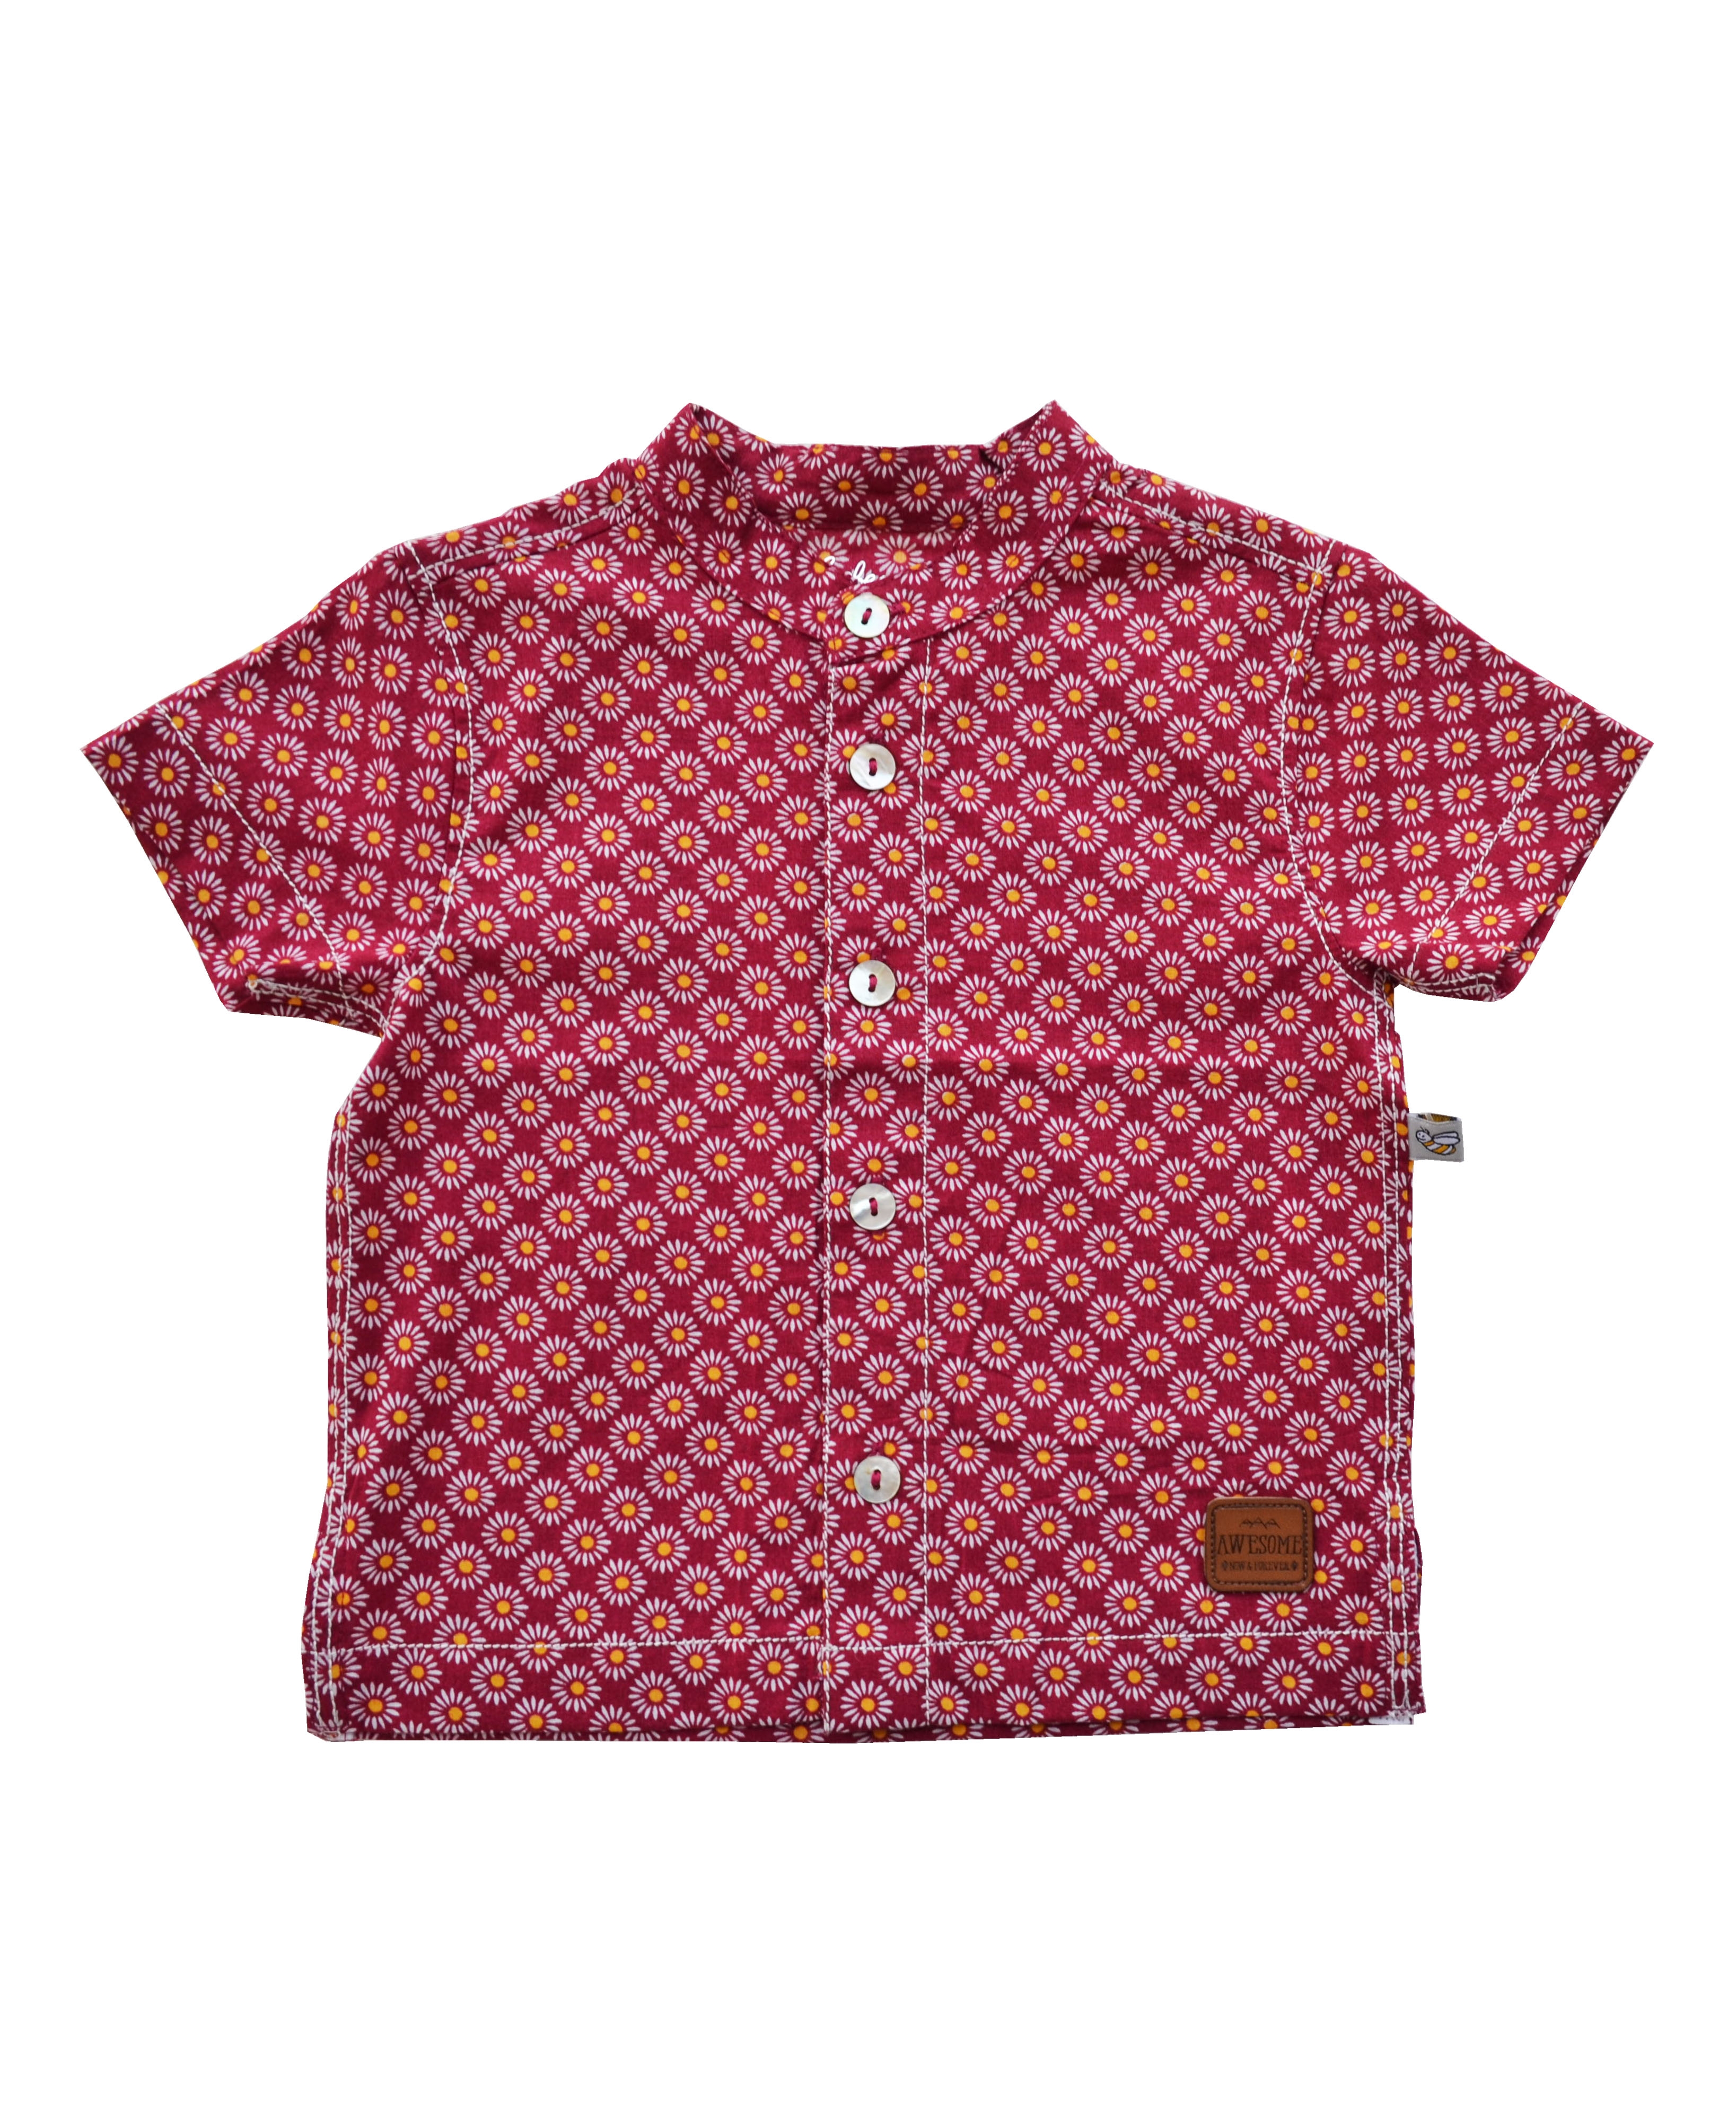 Allover Circles Print Red Short Sleeves Kurta Shirt (100% Cotton)